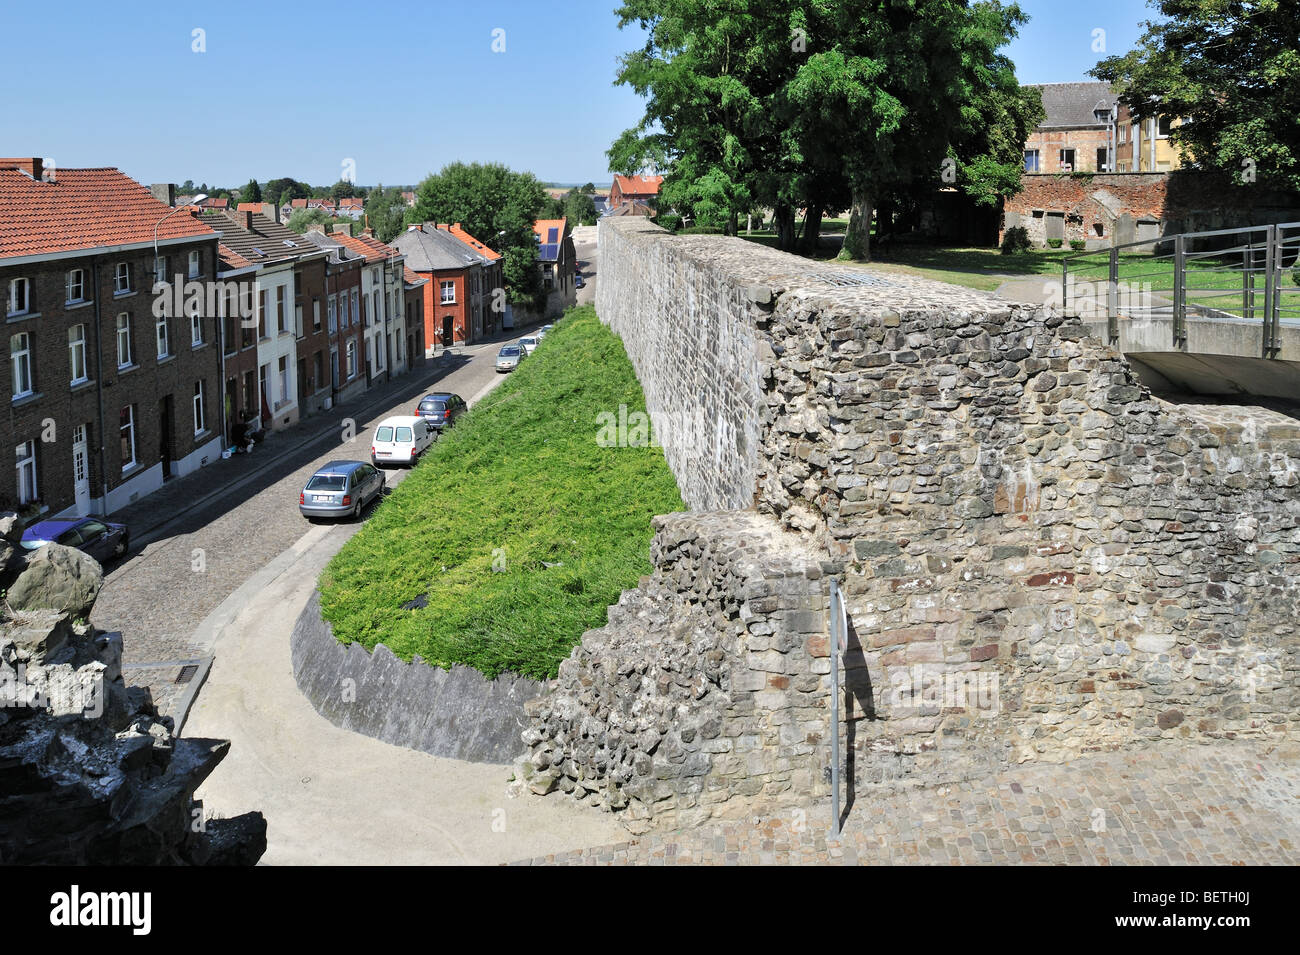 Vistas a la calle y la ciudad medieval antigua muralla en Binche, Hainaut, Valonia, Bélgica Foto de stock